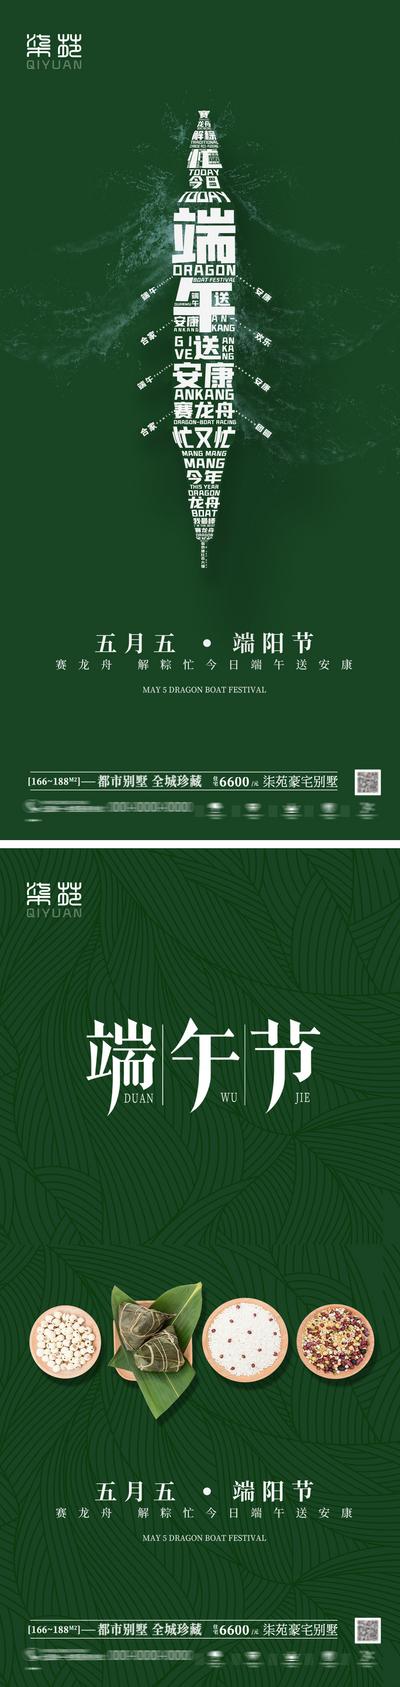 南门网 海报 房地产 中国传统节日 端午节 粽子 龙舟 粽叶 